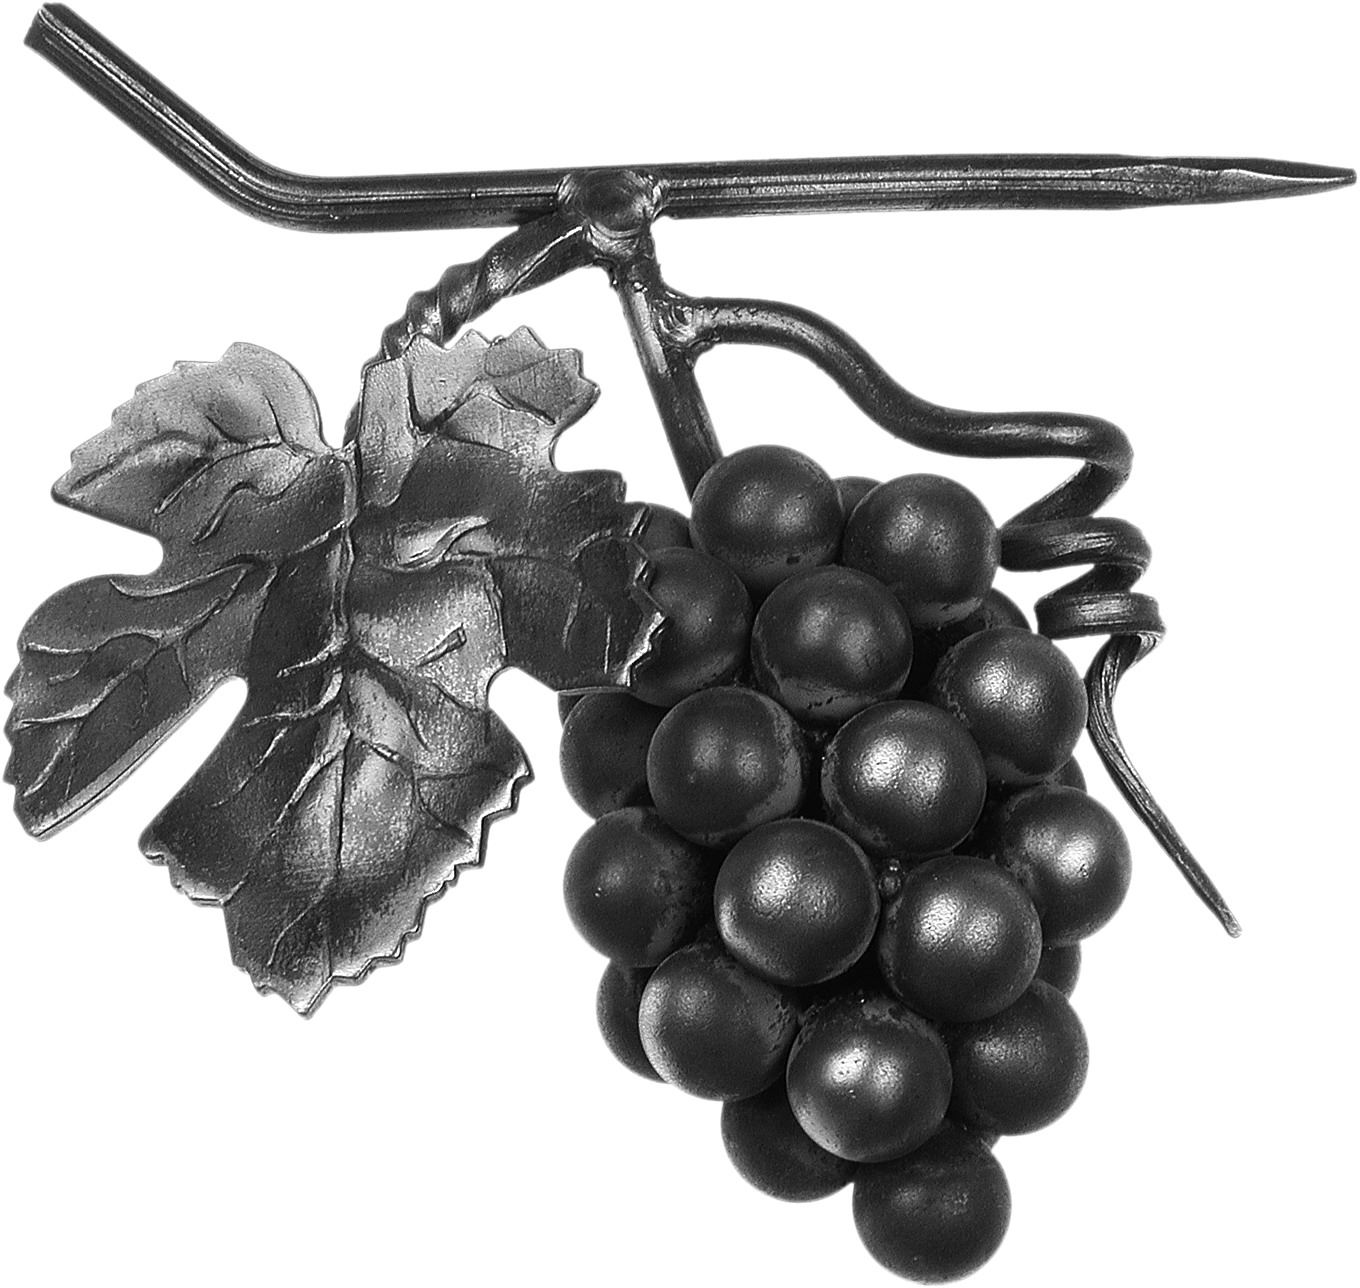 Décor représentant une grappe de raisins d'une hauteur de 180mm et d'une largeur de 180mm. En fer forgé.